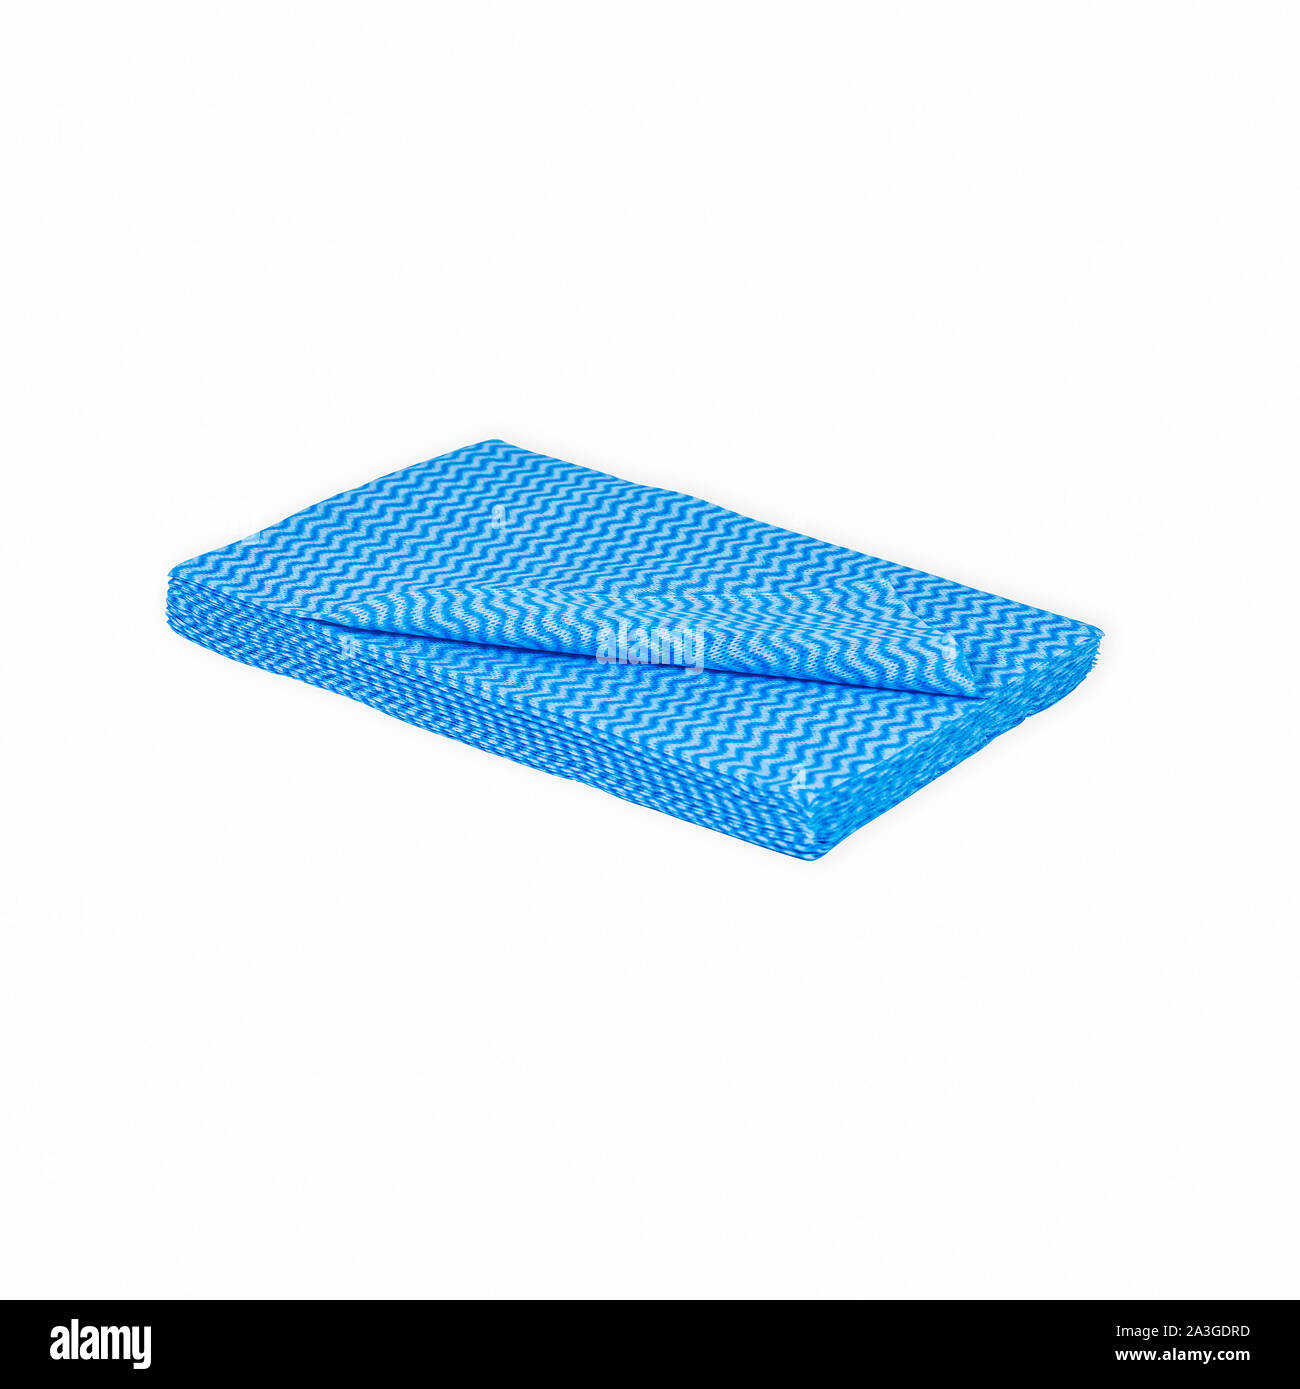 Blue Zig-Zag Panno pulizia assorbente ripiegato molti tergi igiene dosmetic soft Foto Stock